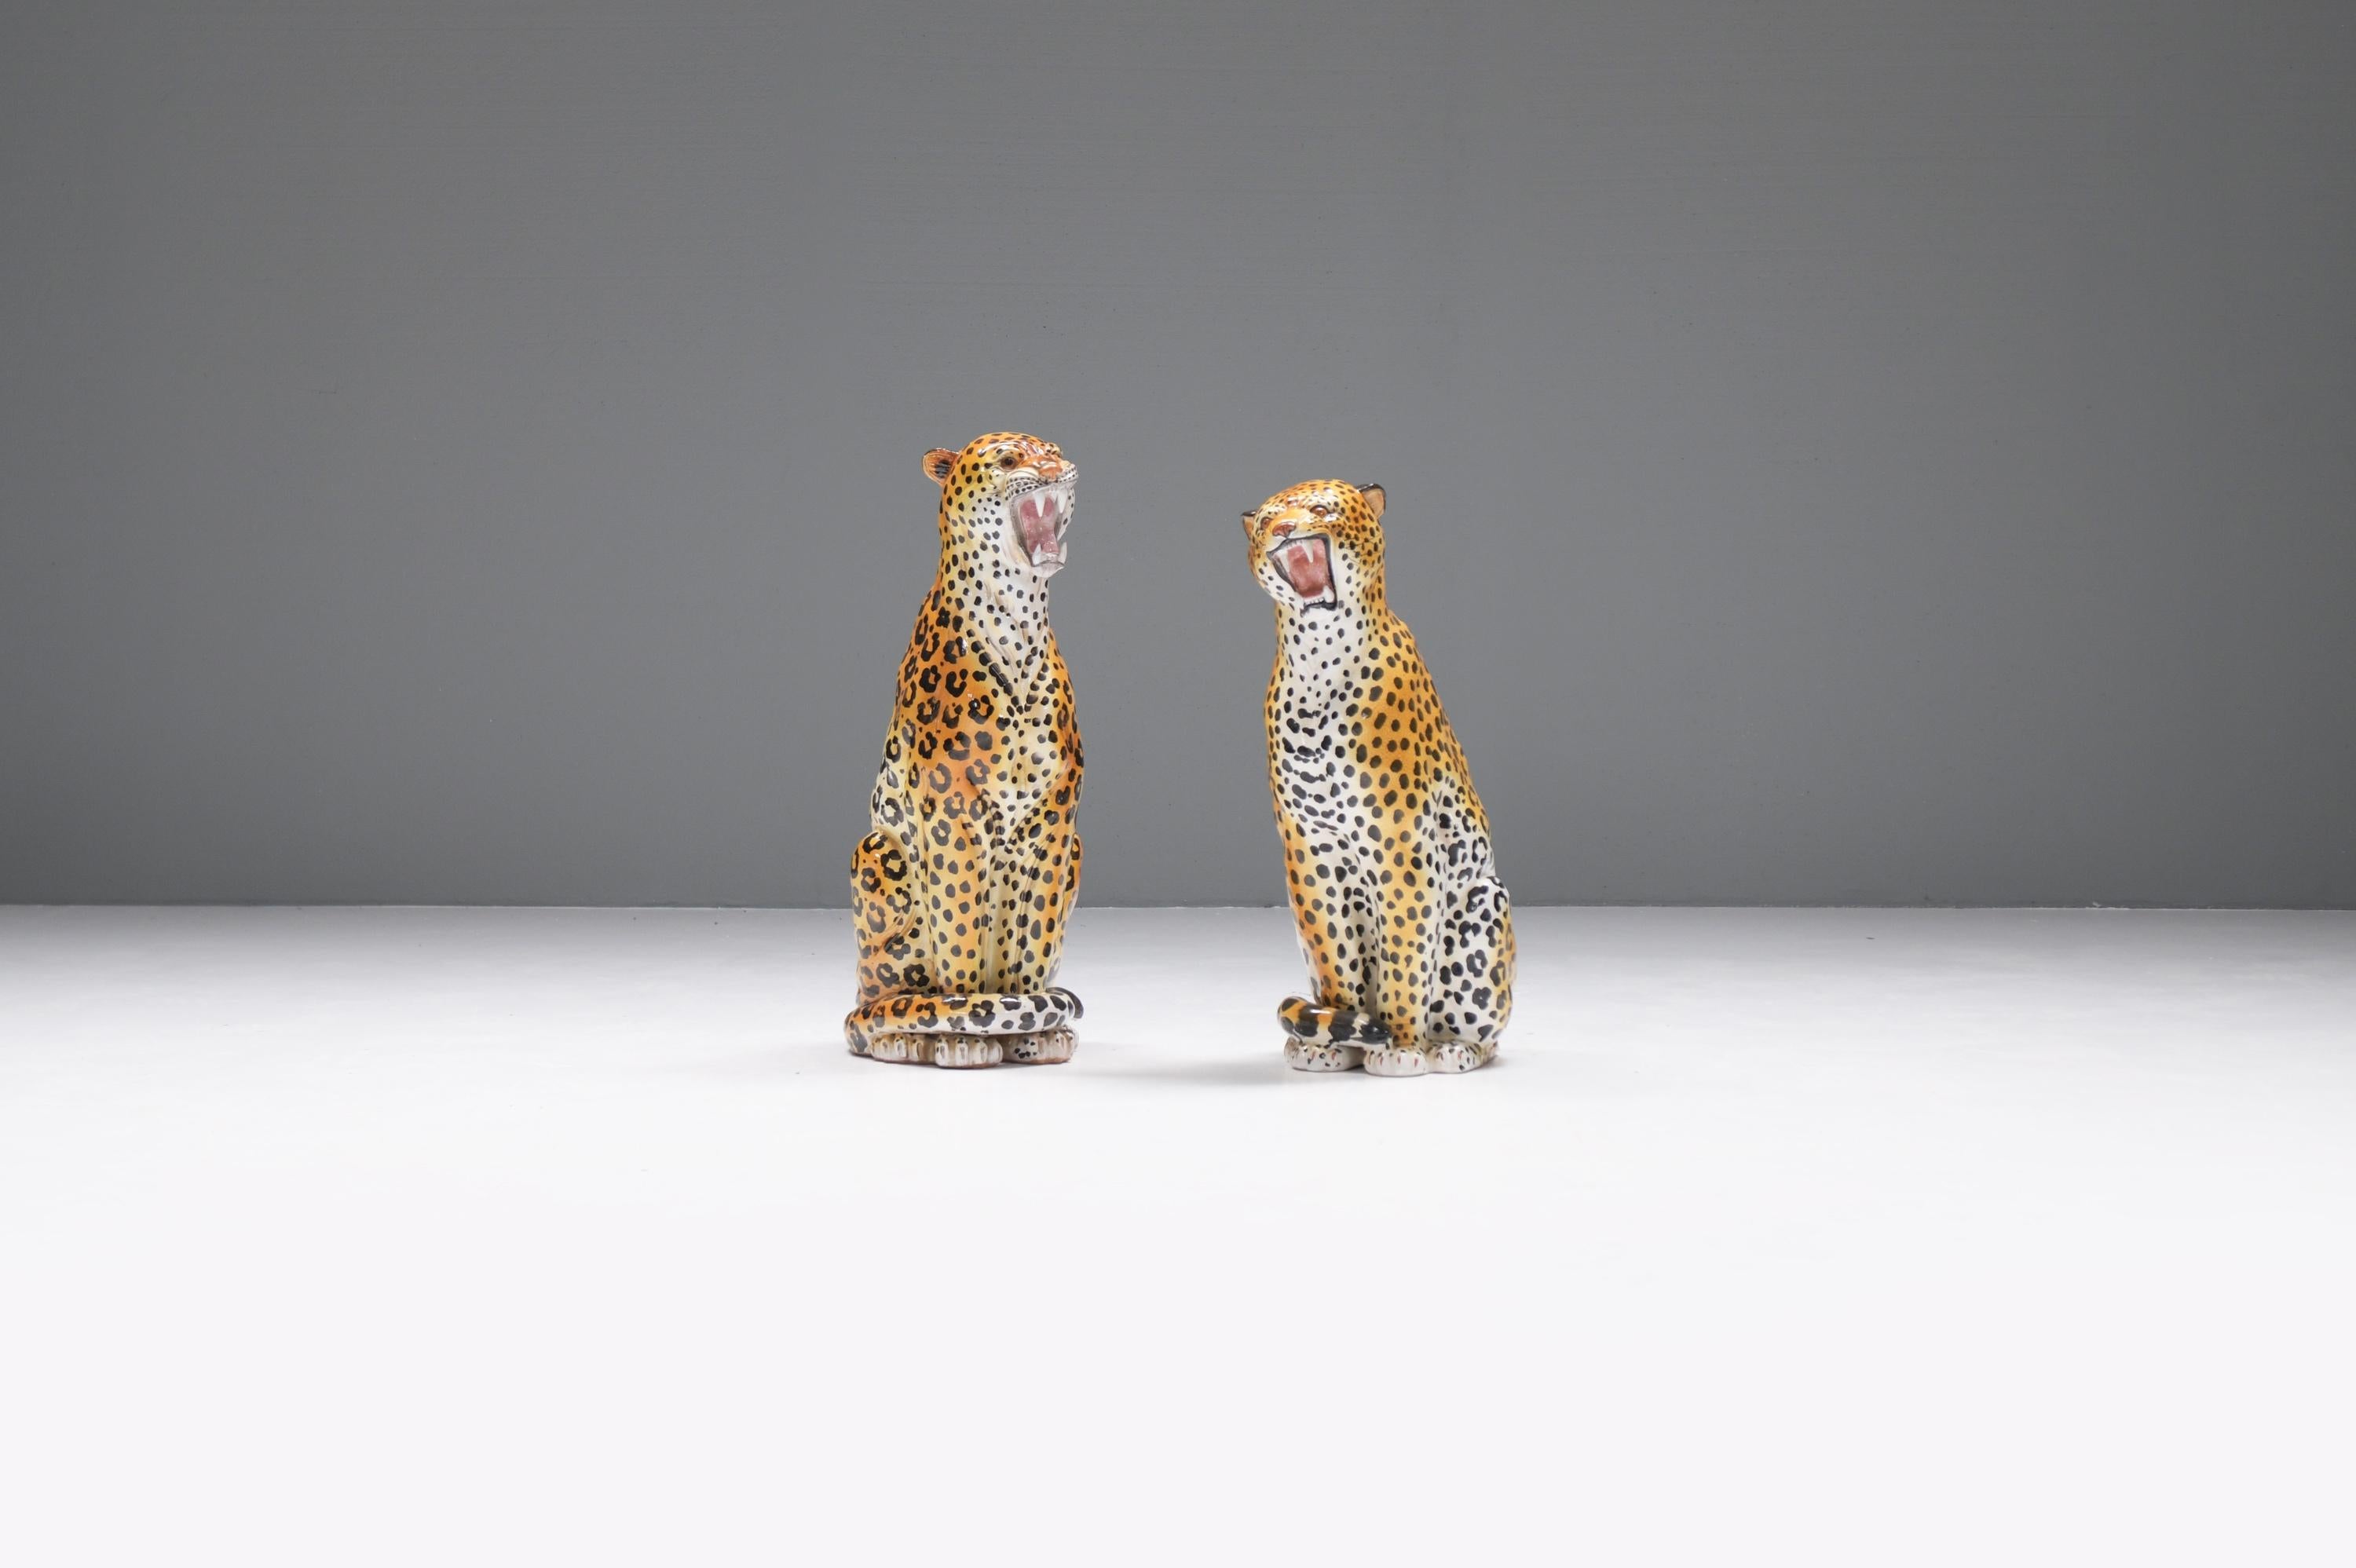 Superbe paire de sculptures de léopards en céramique, mâle et femelle, Italie 1960. 

Magnifique ensemble de deux sculptures de léopard en céramique émaillée vintage.  Fabriqué en Italie dans les années 1960. 
Les deux sculptures sont de grande